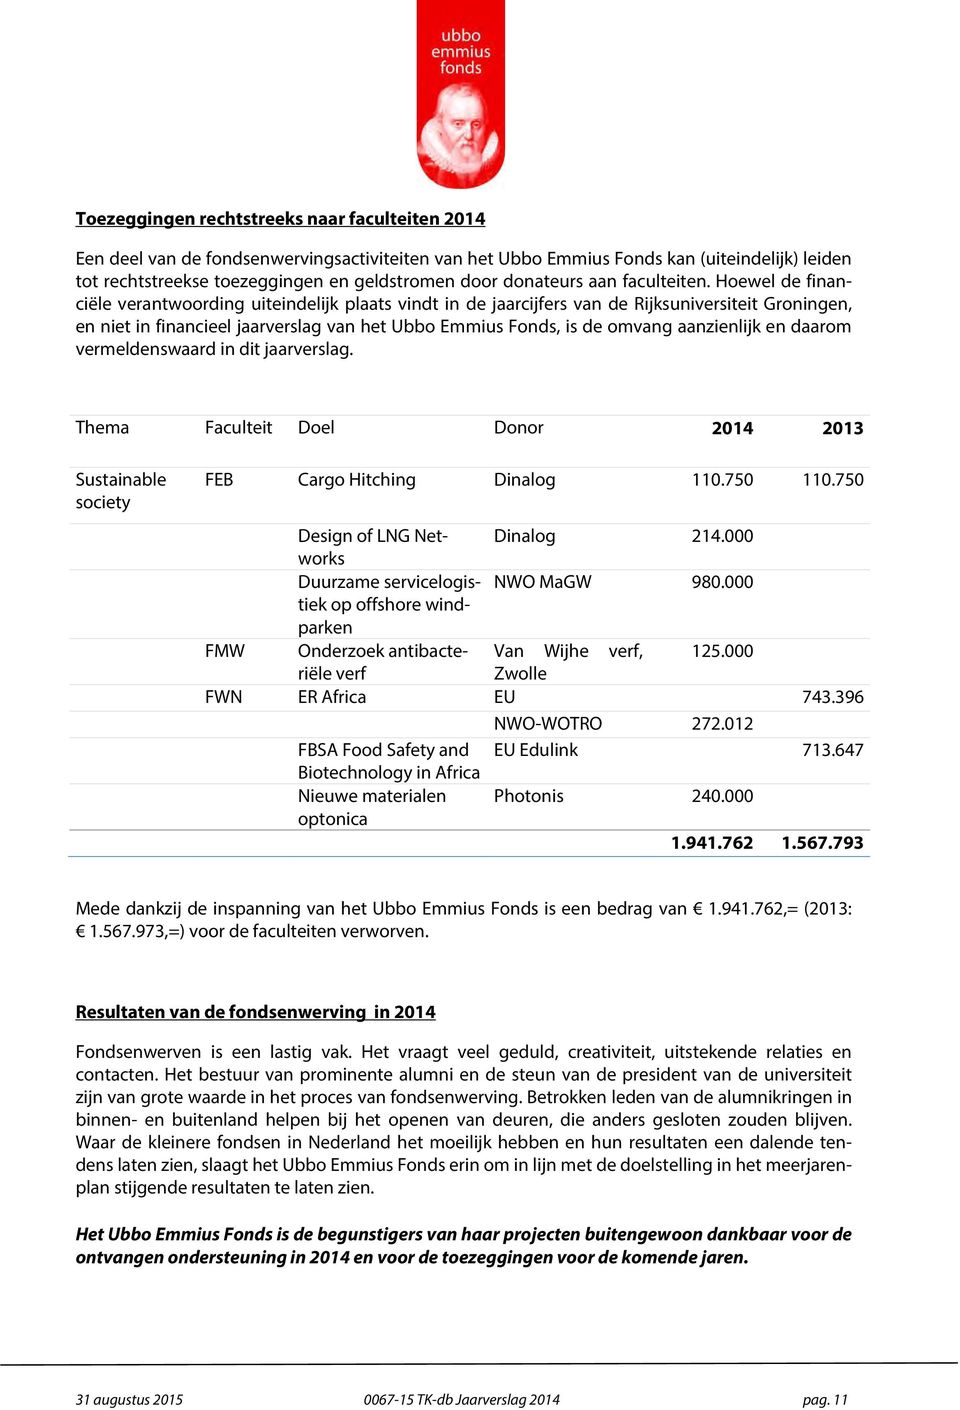 Hoewel de financiële verantwoording uiteindelijk plaats vindt in de jaarcijfers van de Rijksuniversiteit Groningen, en niet in financieel jaarverslag van het Ubbo Emmius Fonds, is de omvang